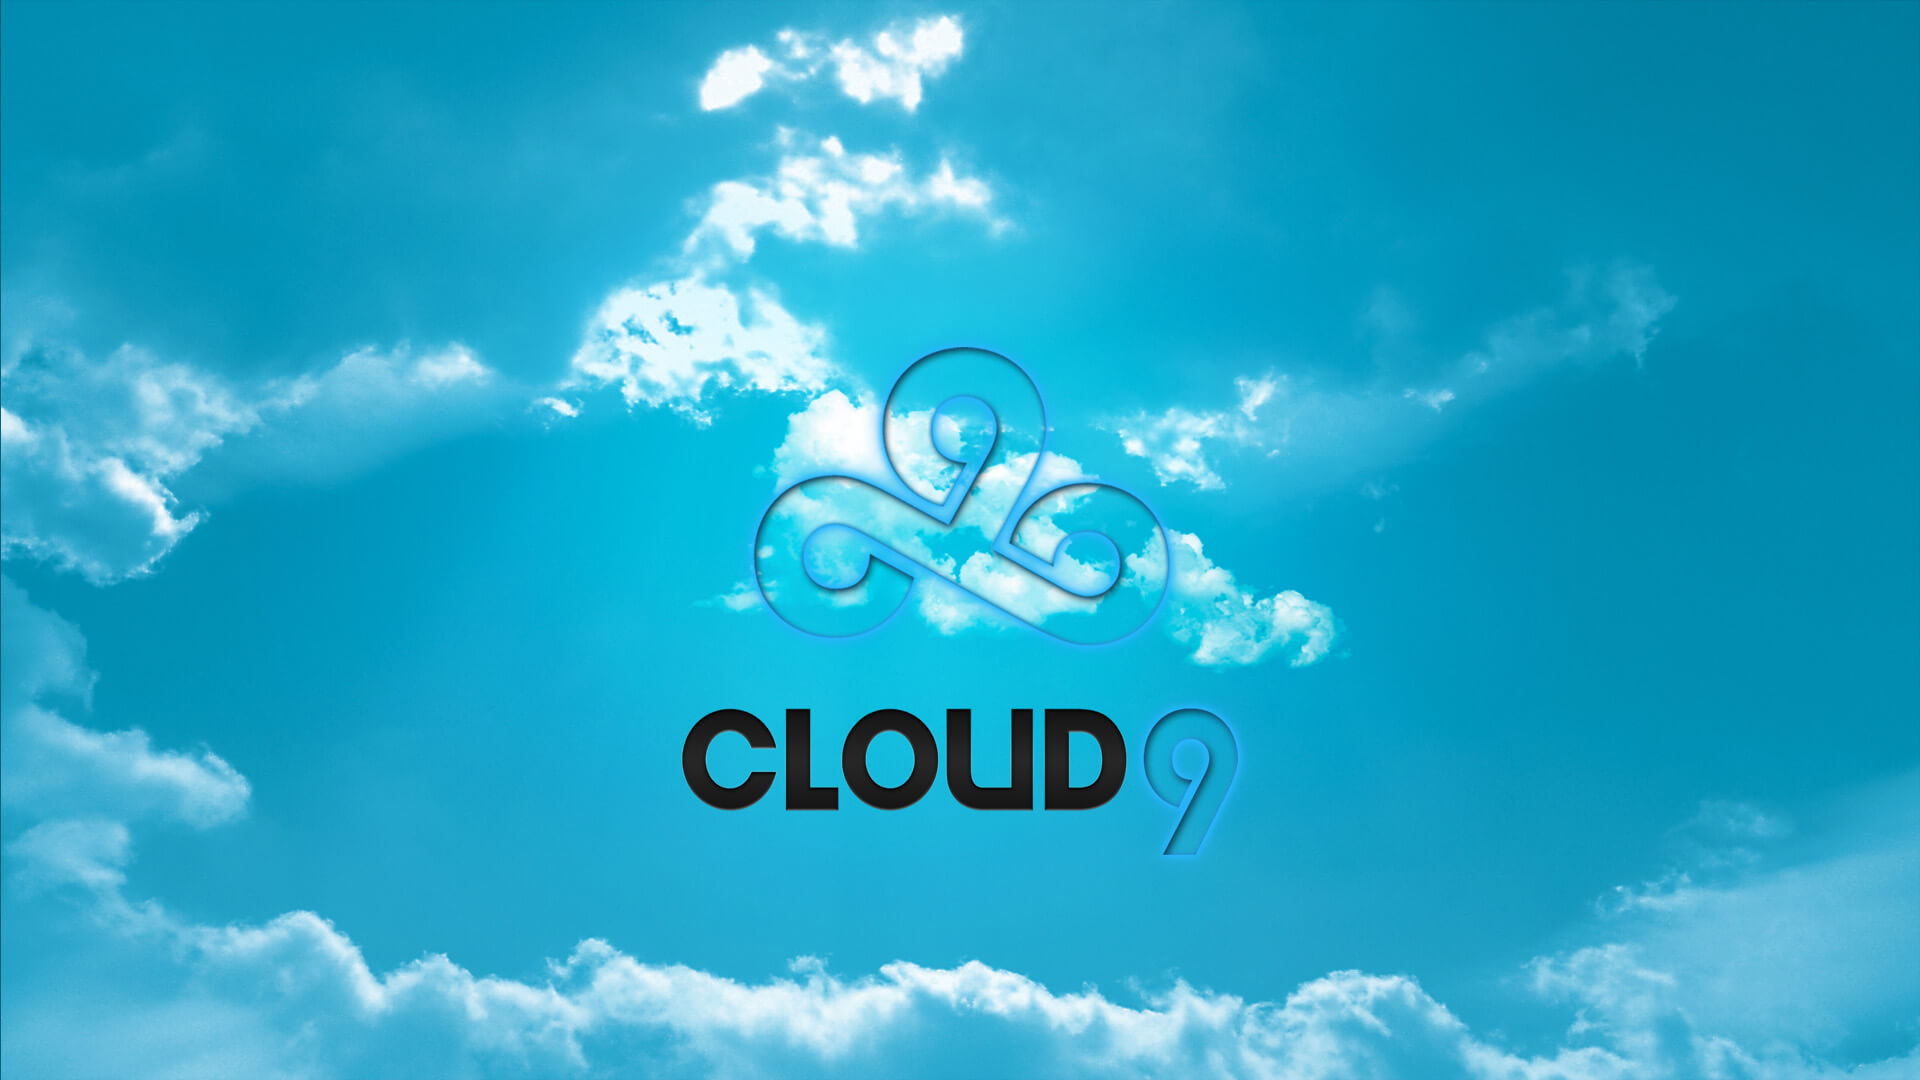 cloud_9_1